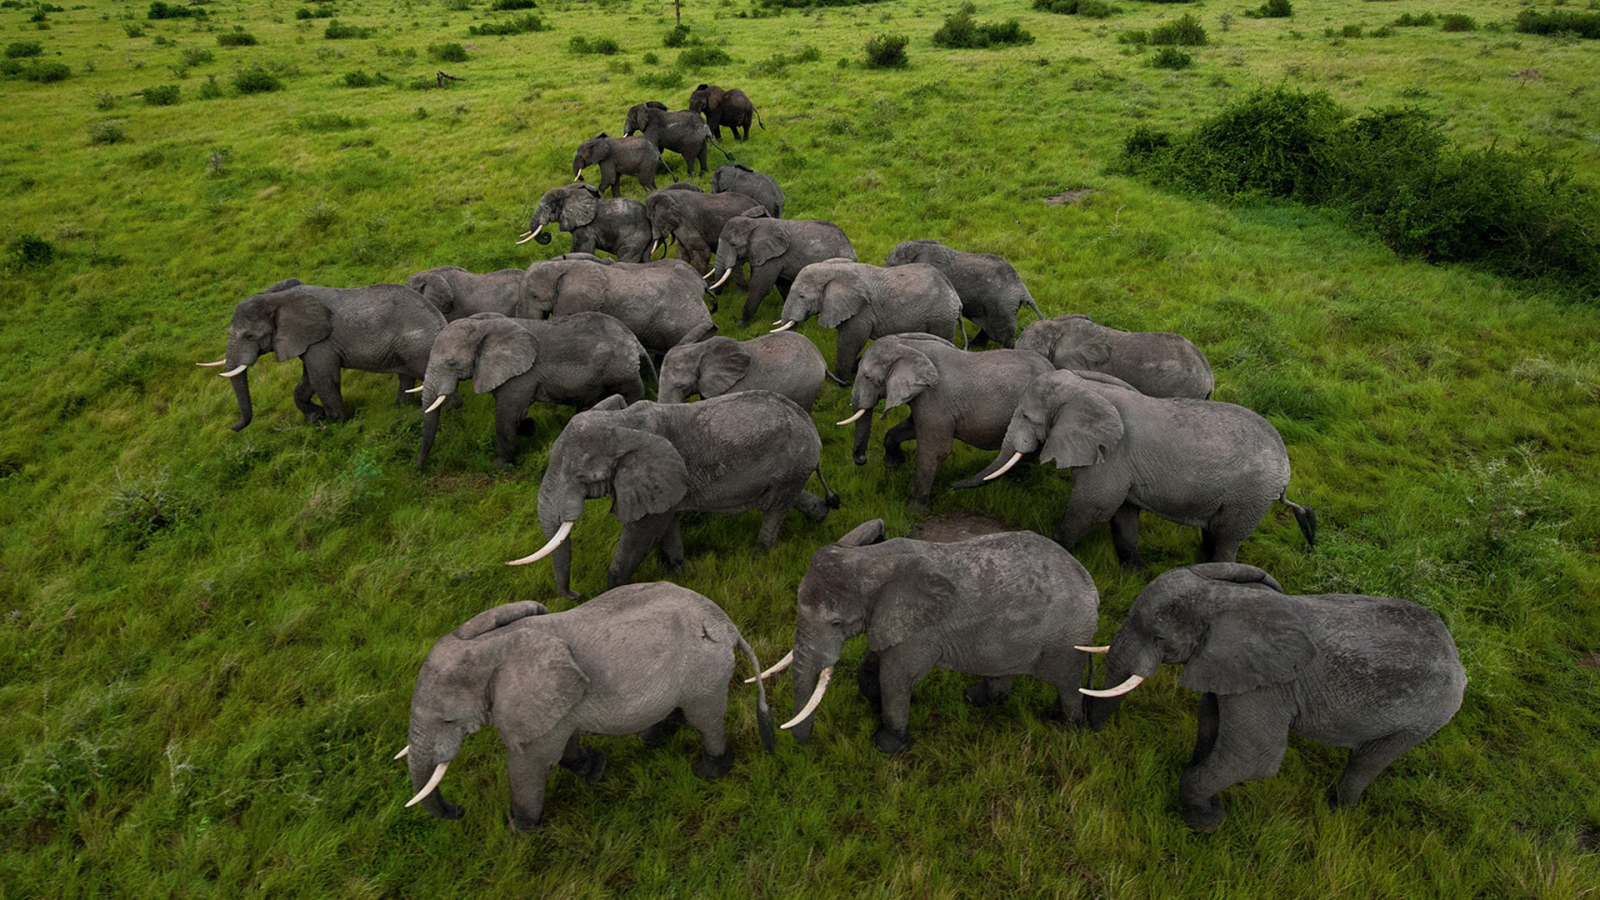 herd of Elephants